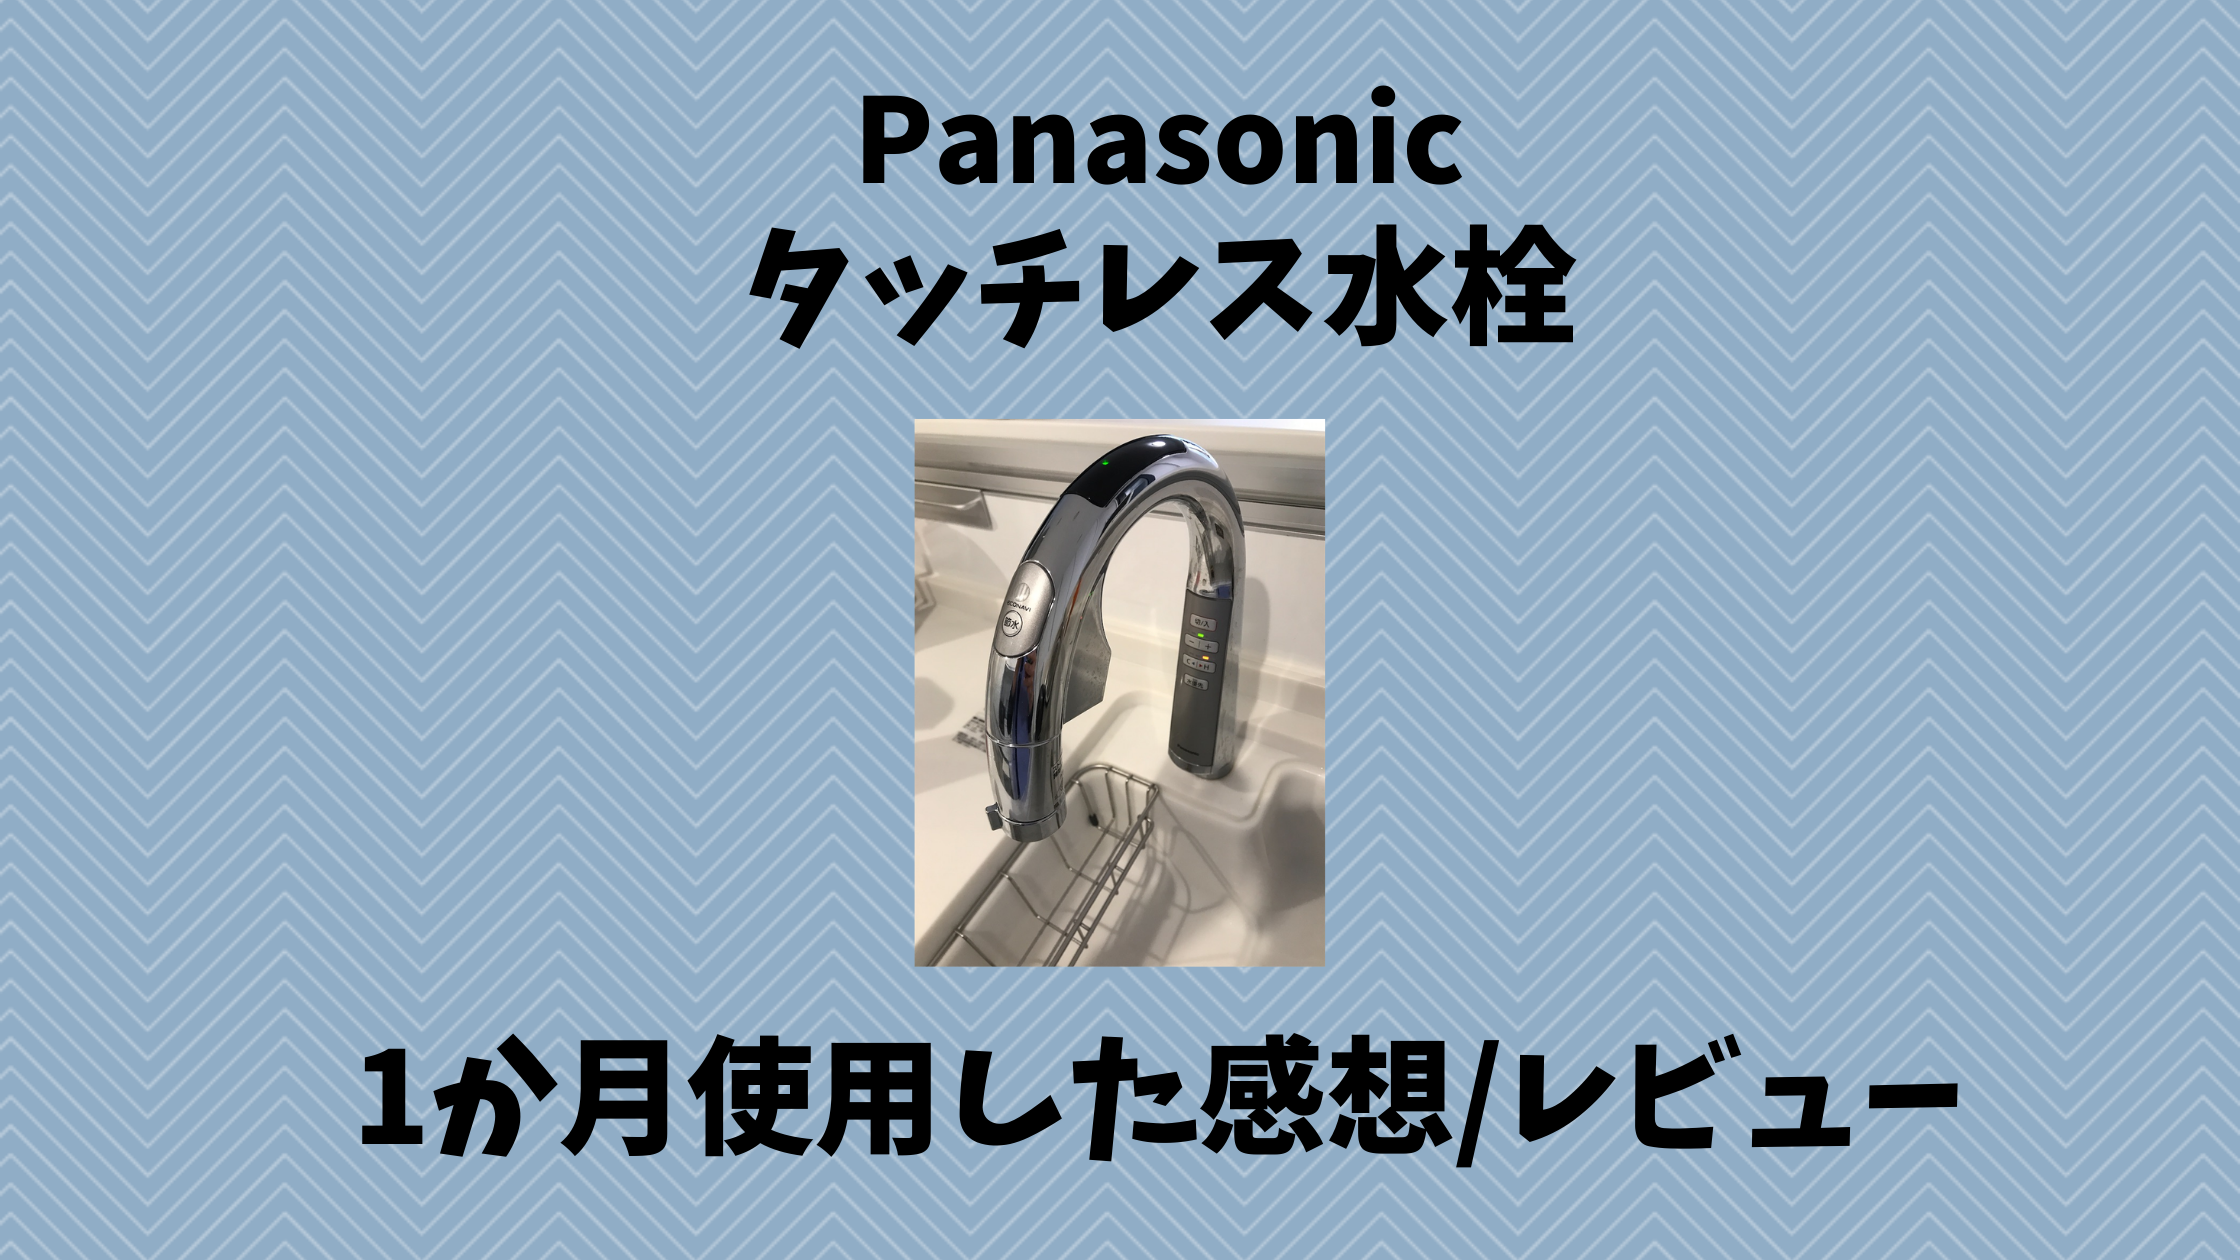 レビュー/口コミ】Panasonicのタッチレス水栓を使っている感想